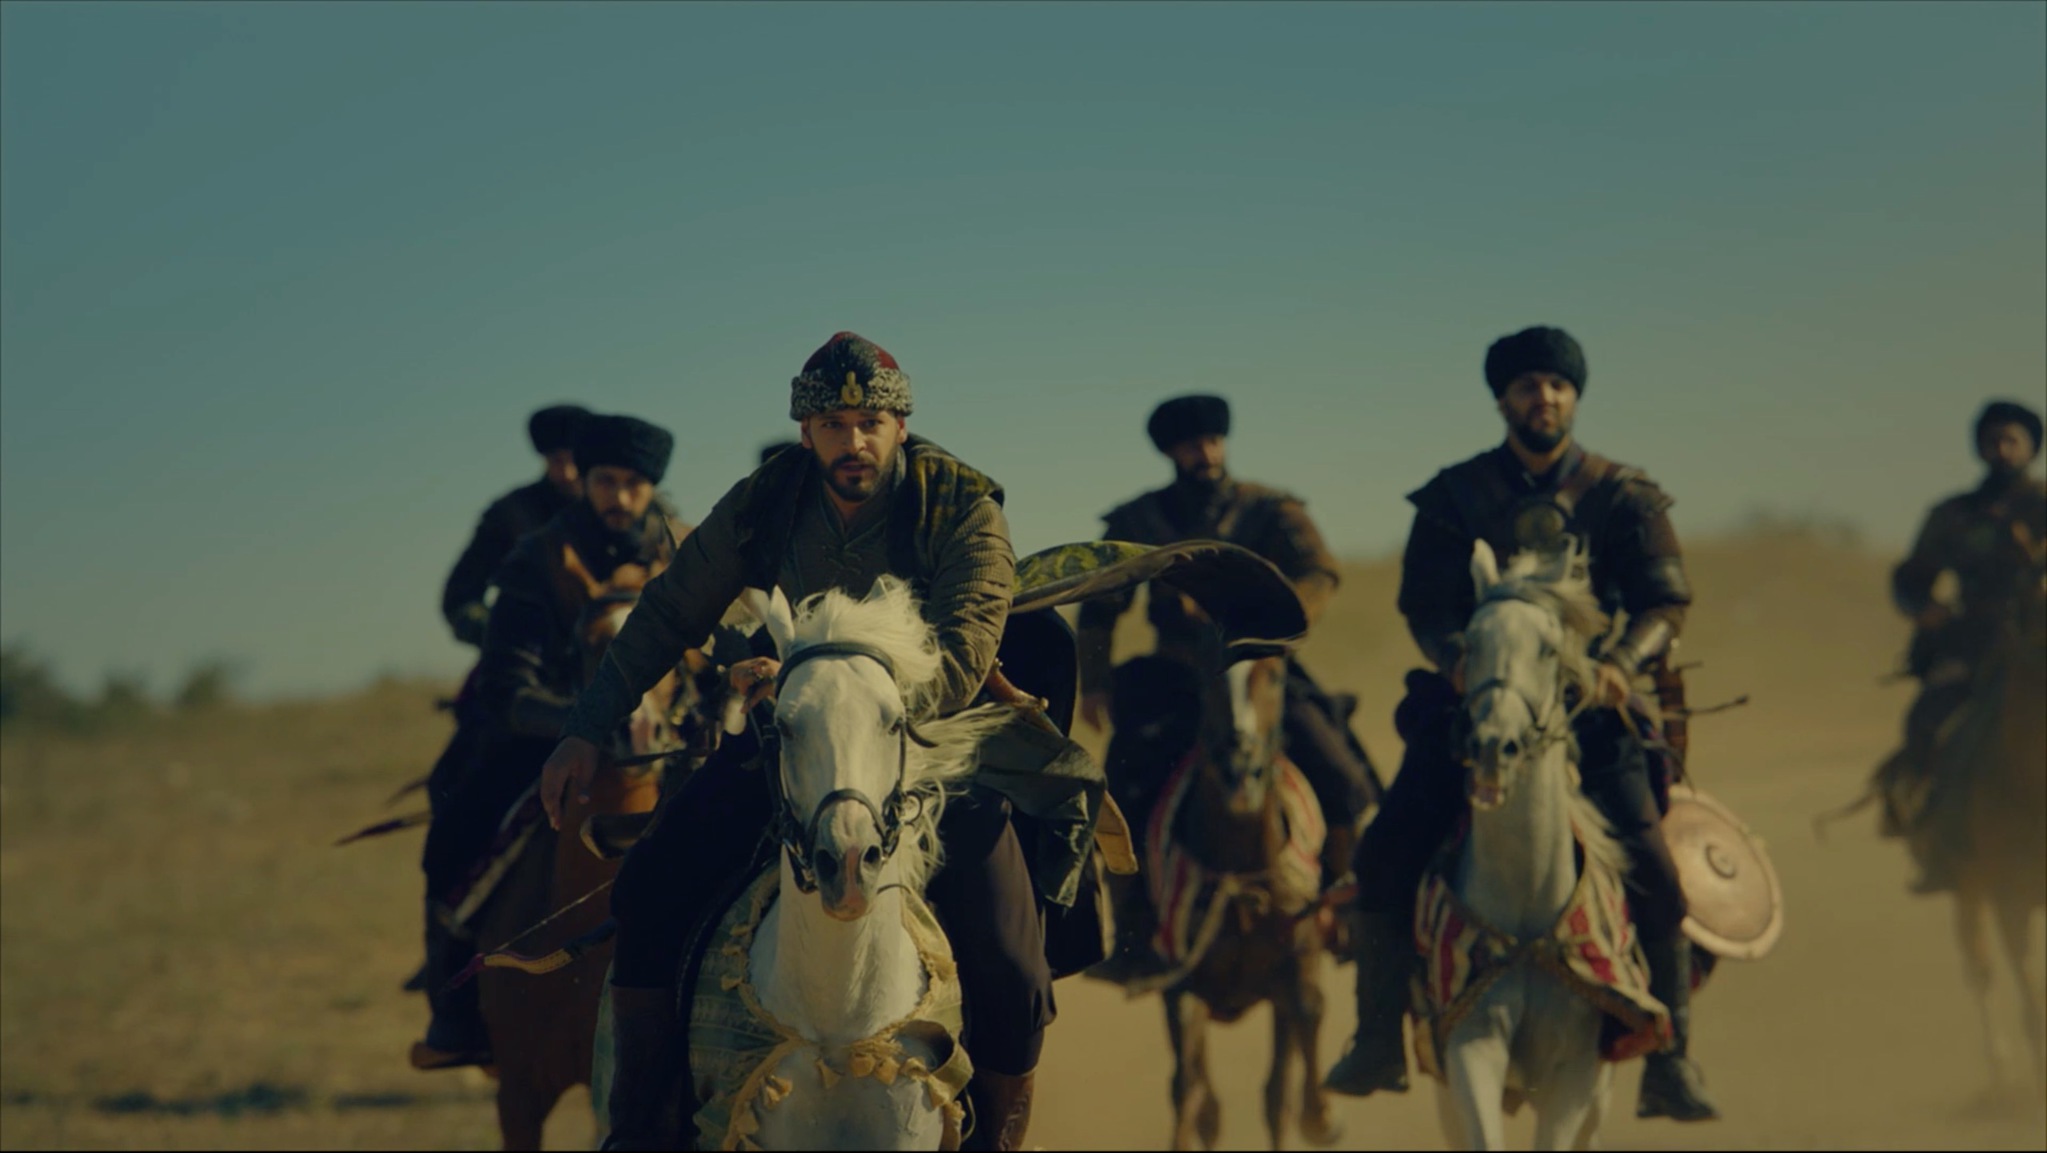 Bozkır Arslanı Celaleddin yeni bölümüyle nefes kesecek! | Sultan Aleaddin ve Türkan Hatun karşı karşıya! Celaleddin iç savaşa engel olmaya çalışıyor!